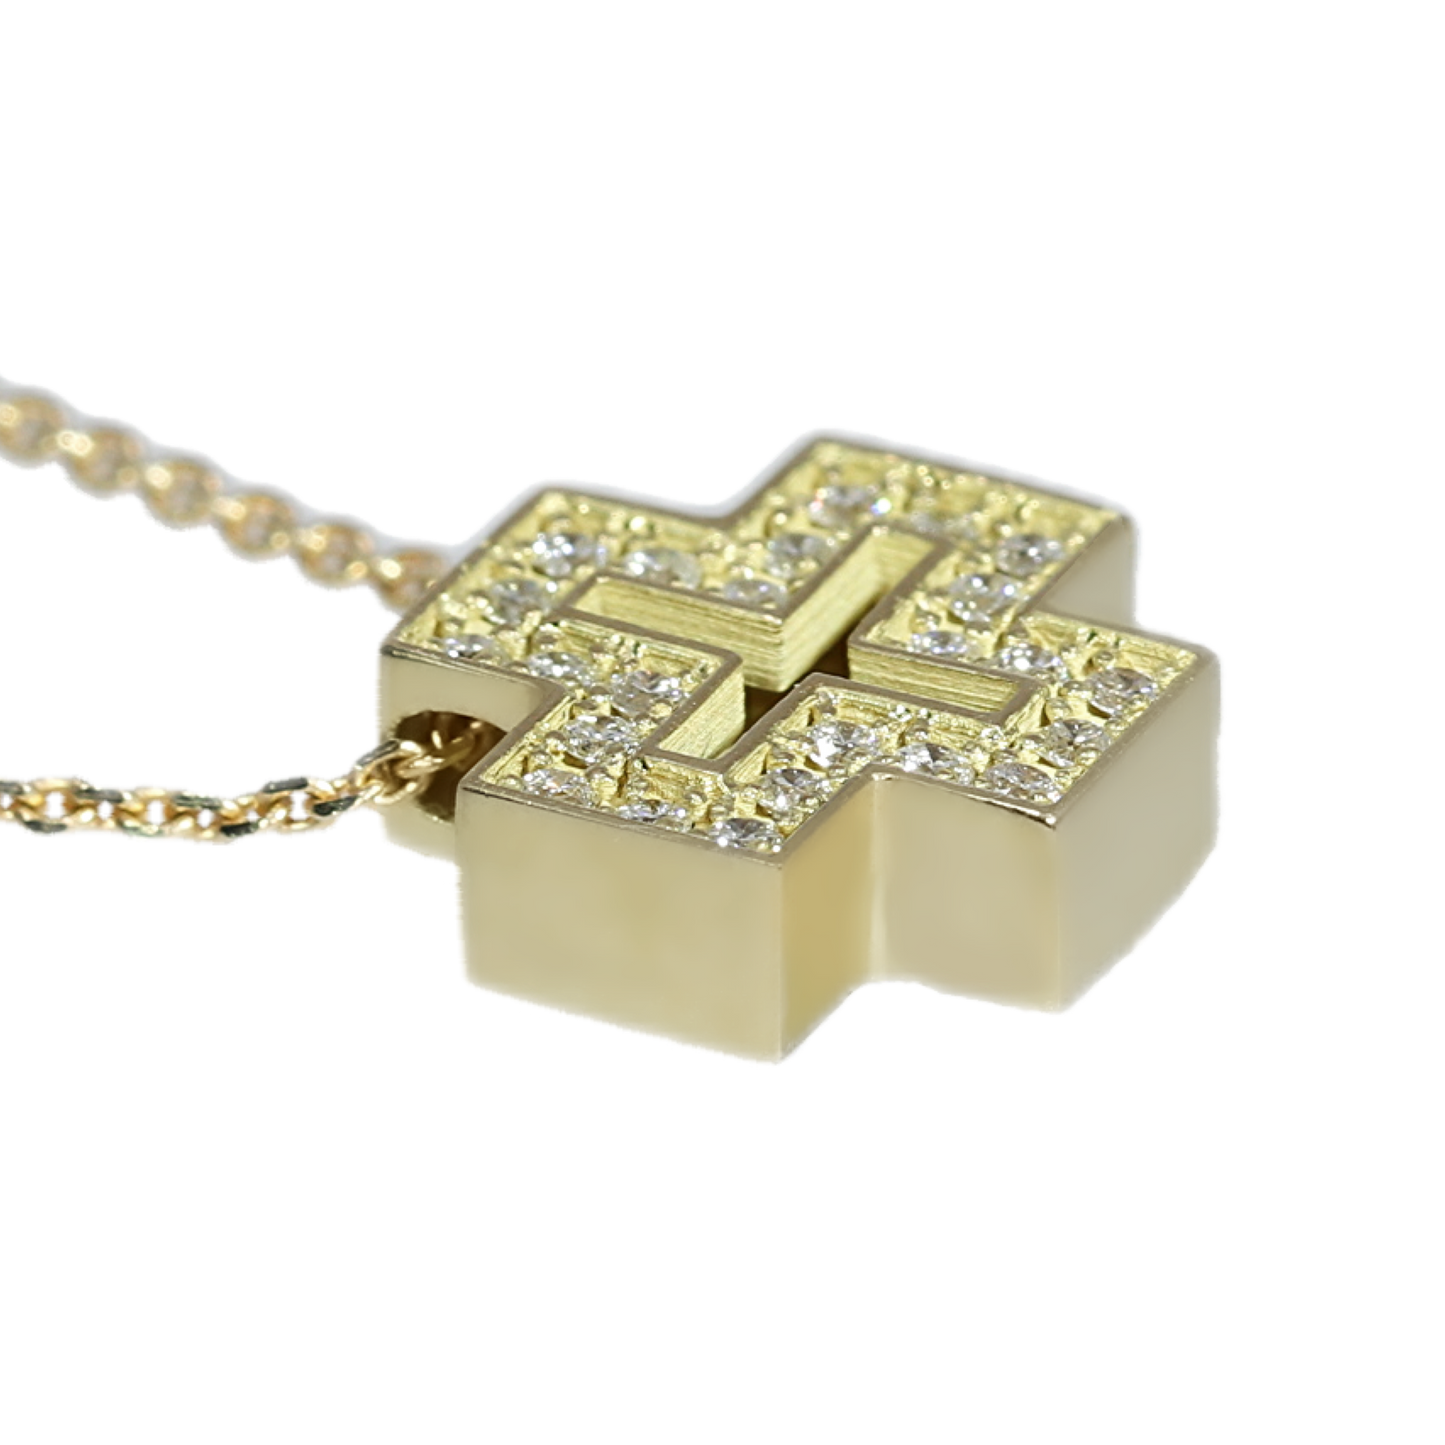 Colgante Cruz Diamantes - Oro Blanco 18kt